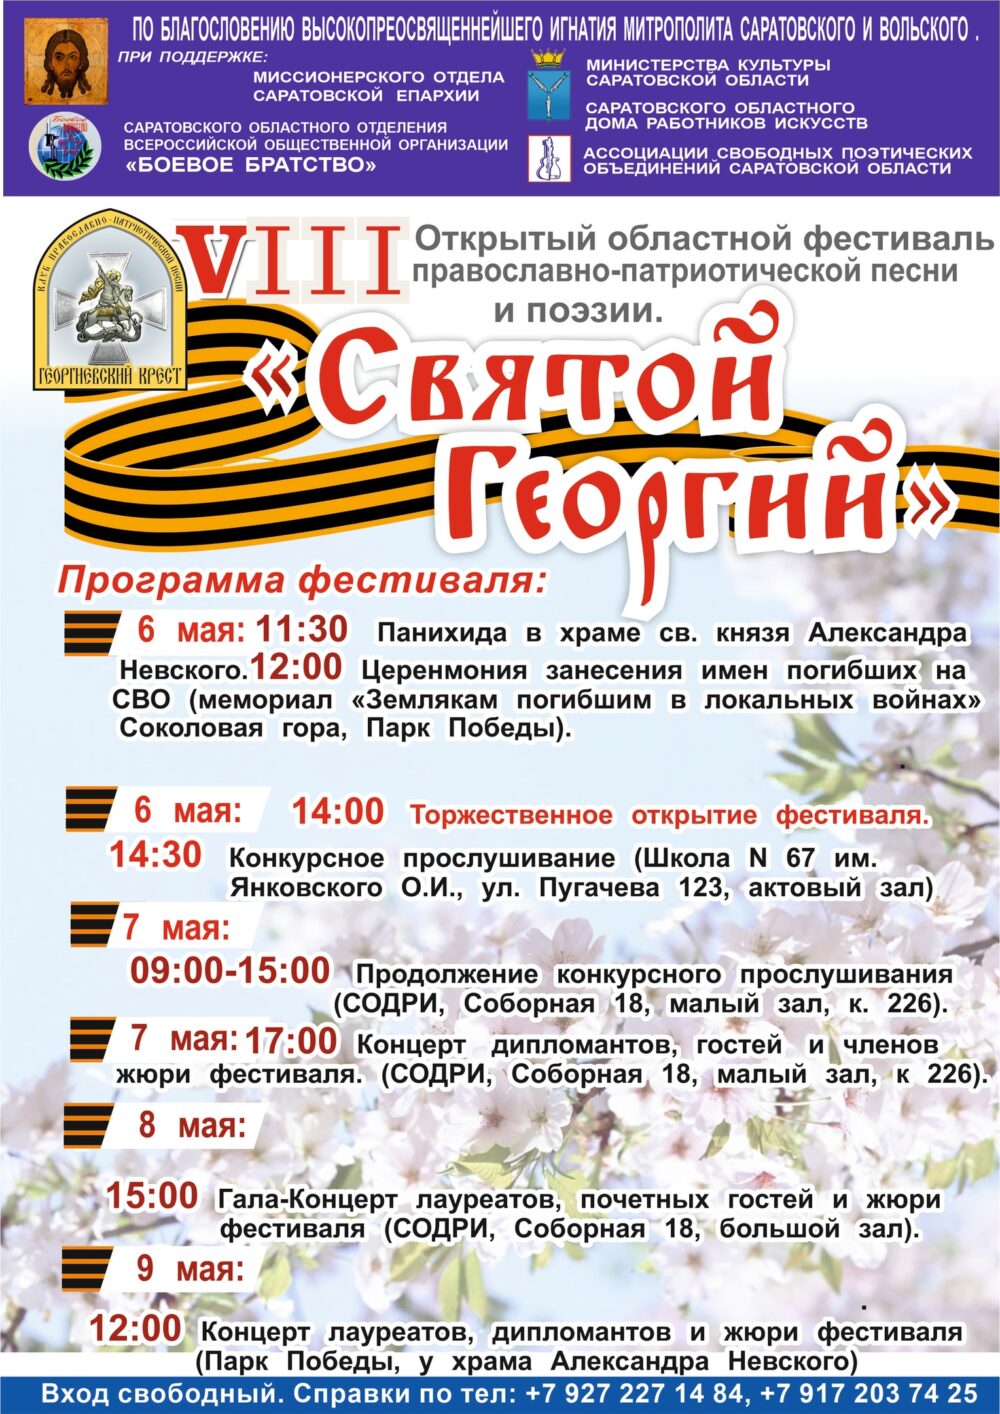 В Саратове пройдет областной фестиваль «Святой Георгий»